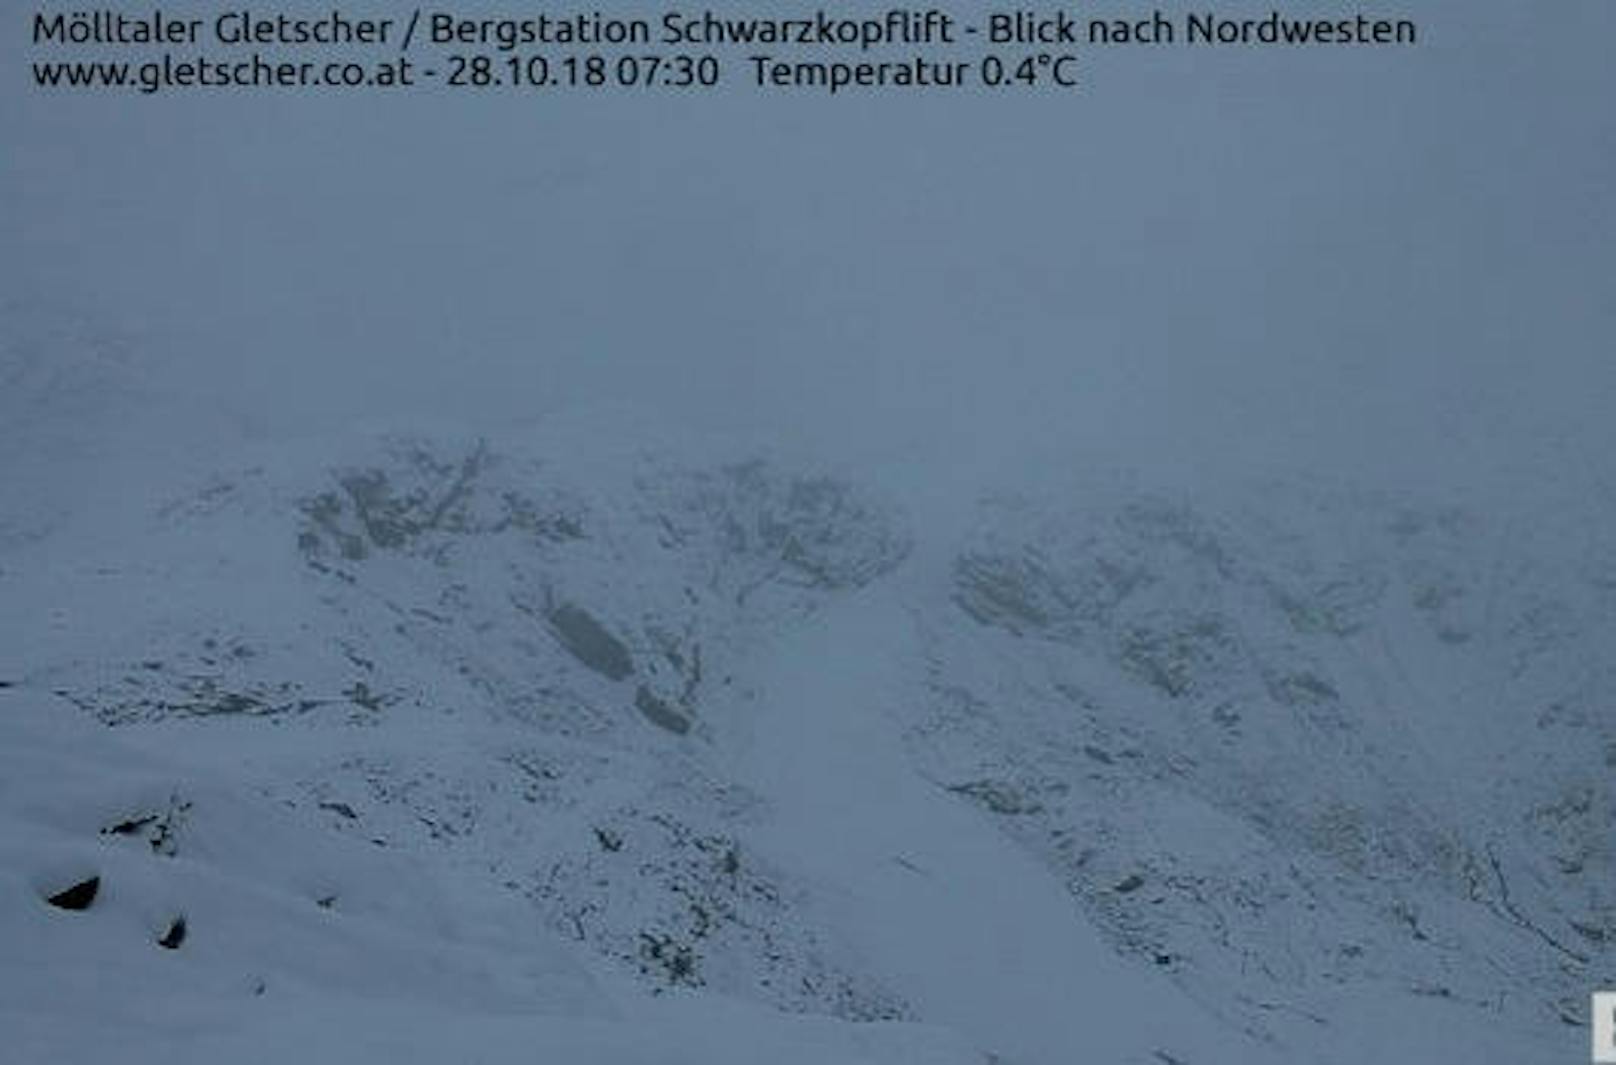 Und auch am Mölltaler Gletscher zeigte die Webcam eine weiße Landschaft.